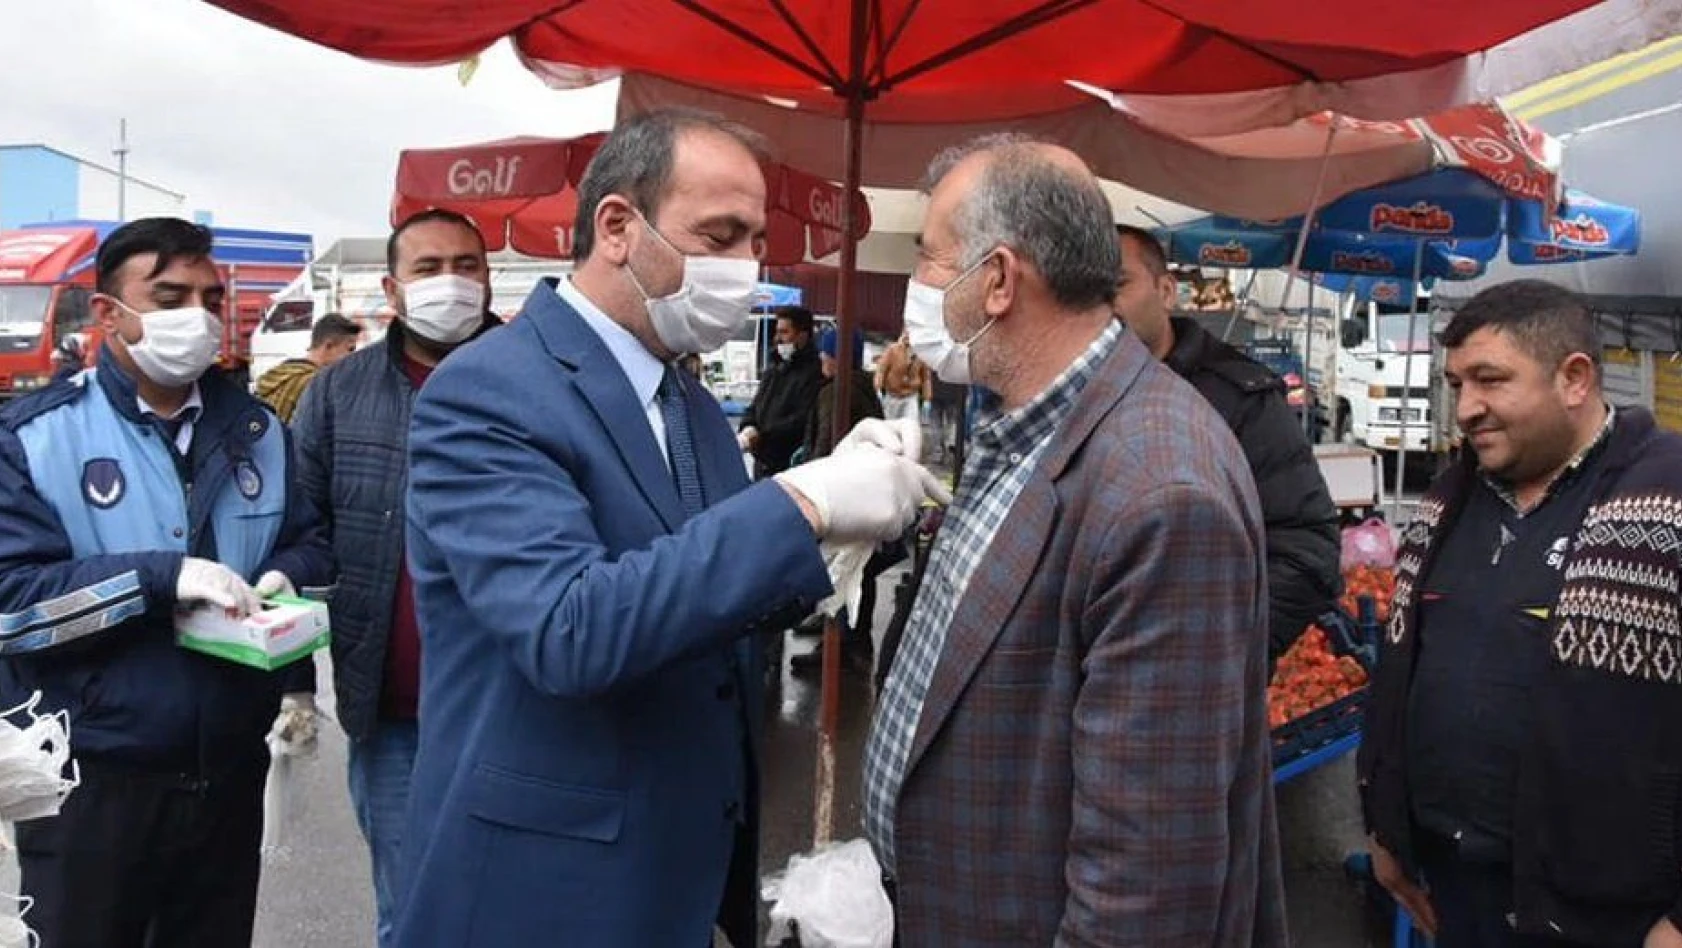 Tomarza Belediyesi esnafa eldiven ve maske dağıttı